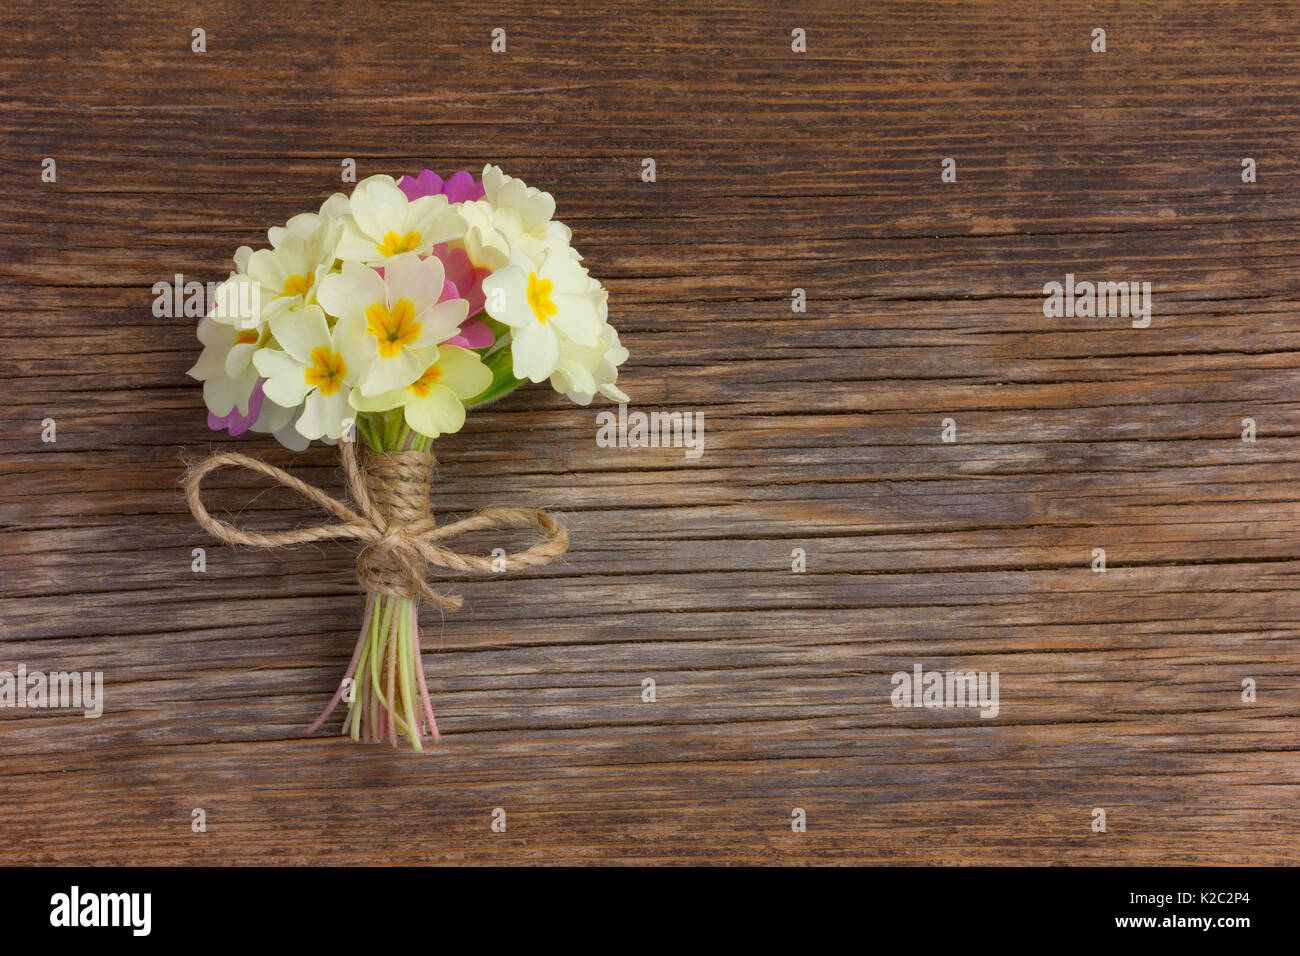 Un mazzetto di giallo pallido primule legati con spago su una vecchia tavola di legno nelle crepe. Spazio libero per il testo. Copia dello spazio. Foto Stock